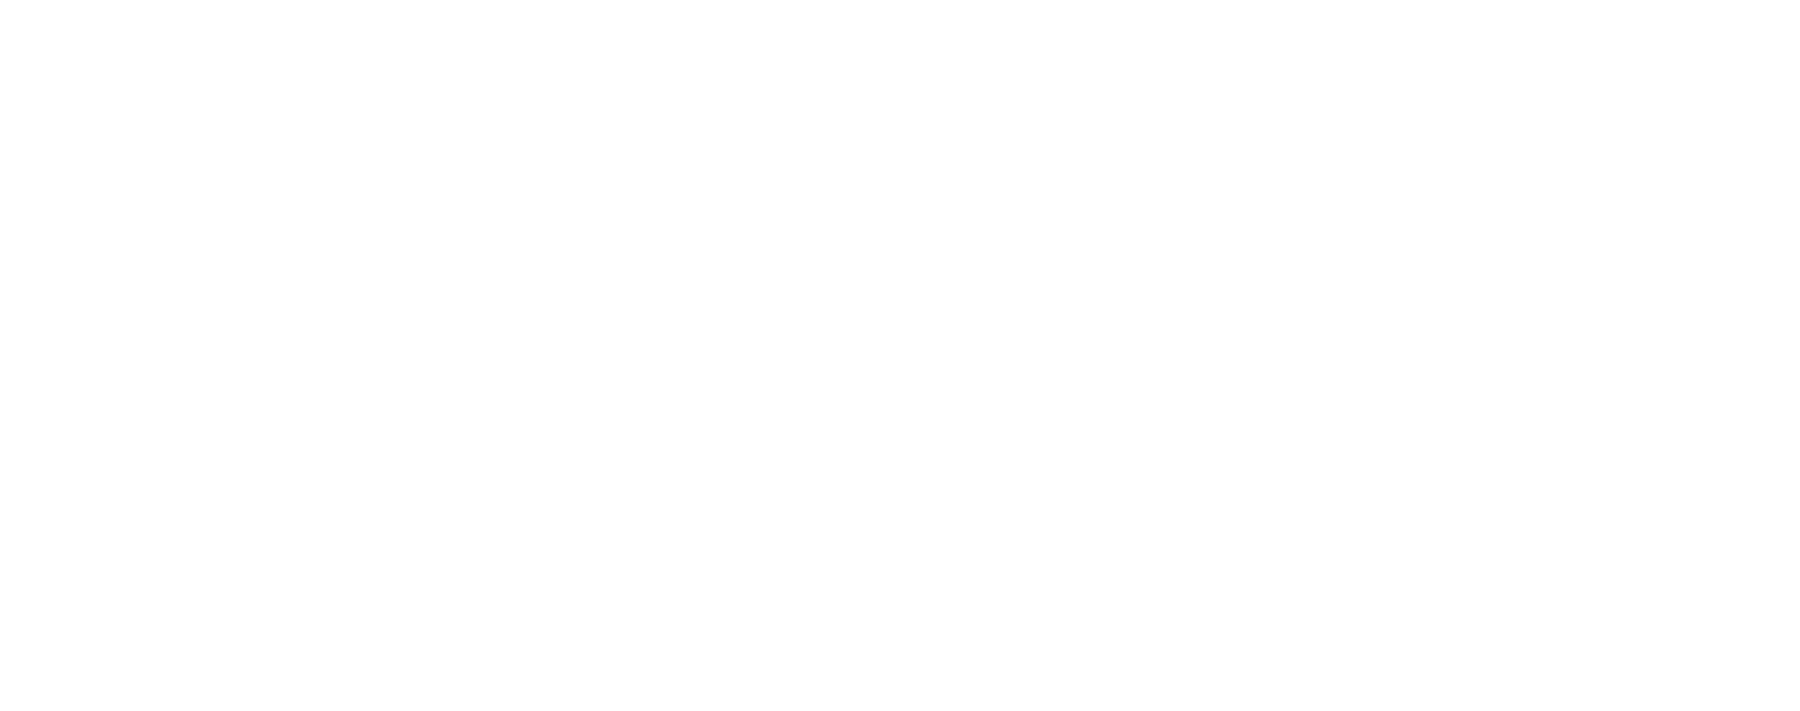 Buy BC